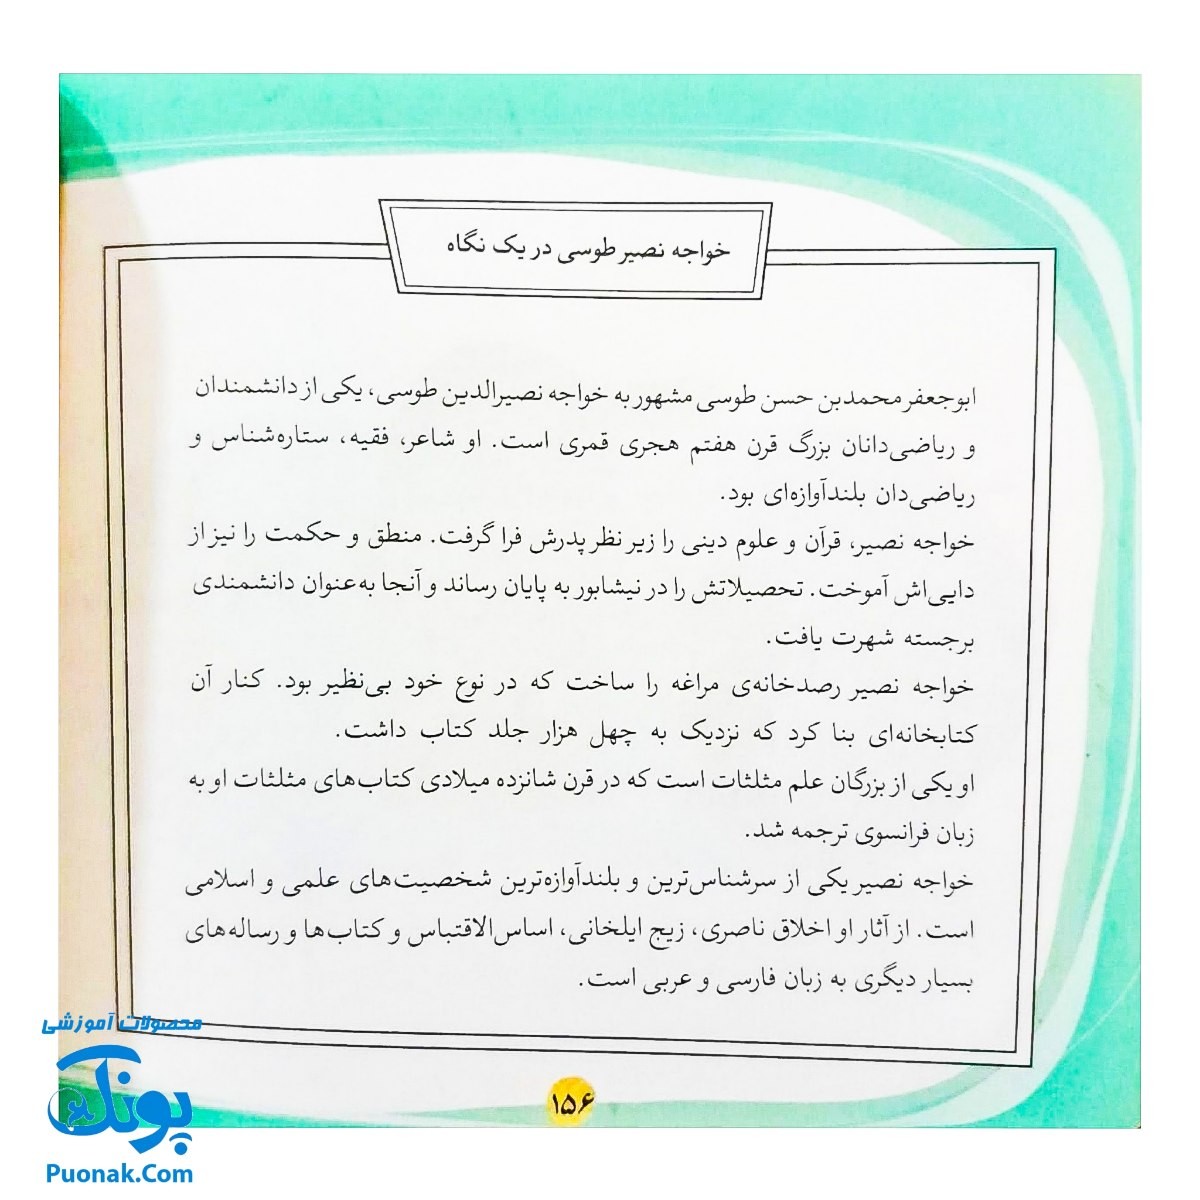 کتاب مجموعه قصه های قشنگ و قدیمی جلد ۱۵ پانزدهم ۱۲ قصه از زندگی خواجه نصیر طوسی